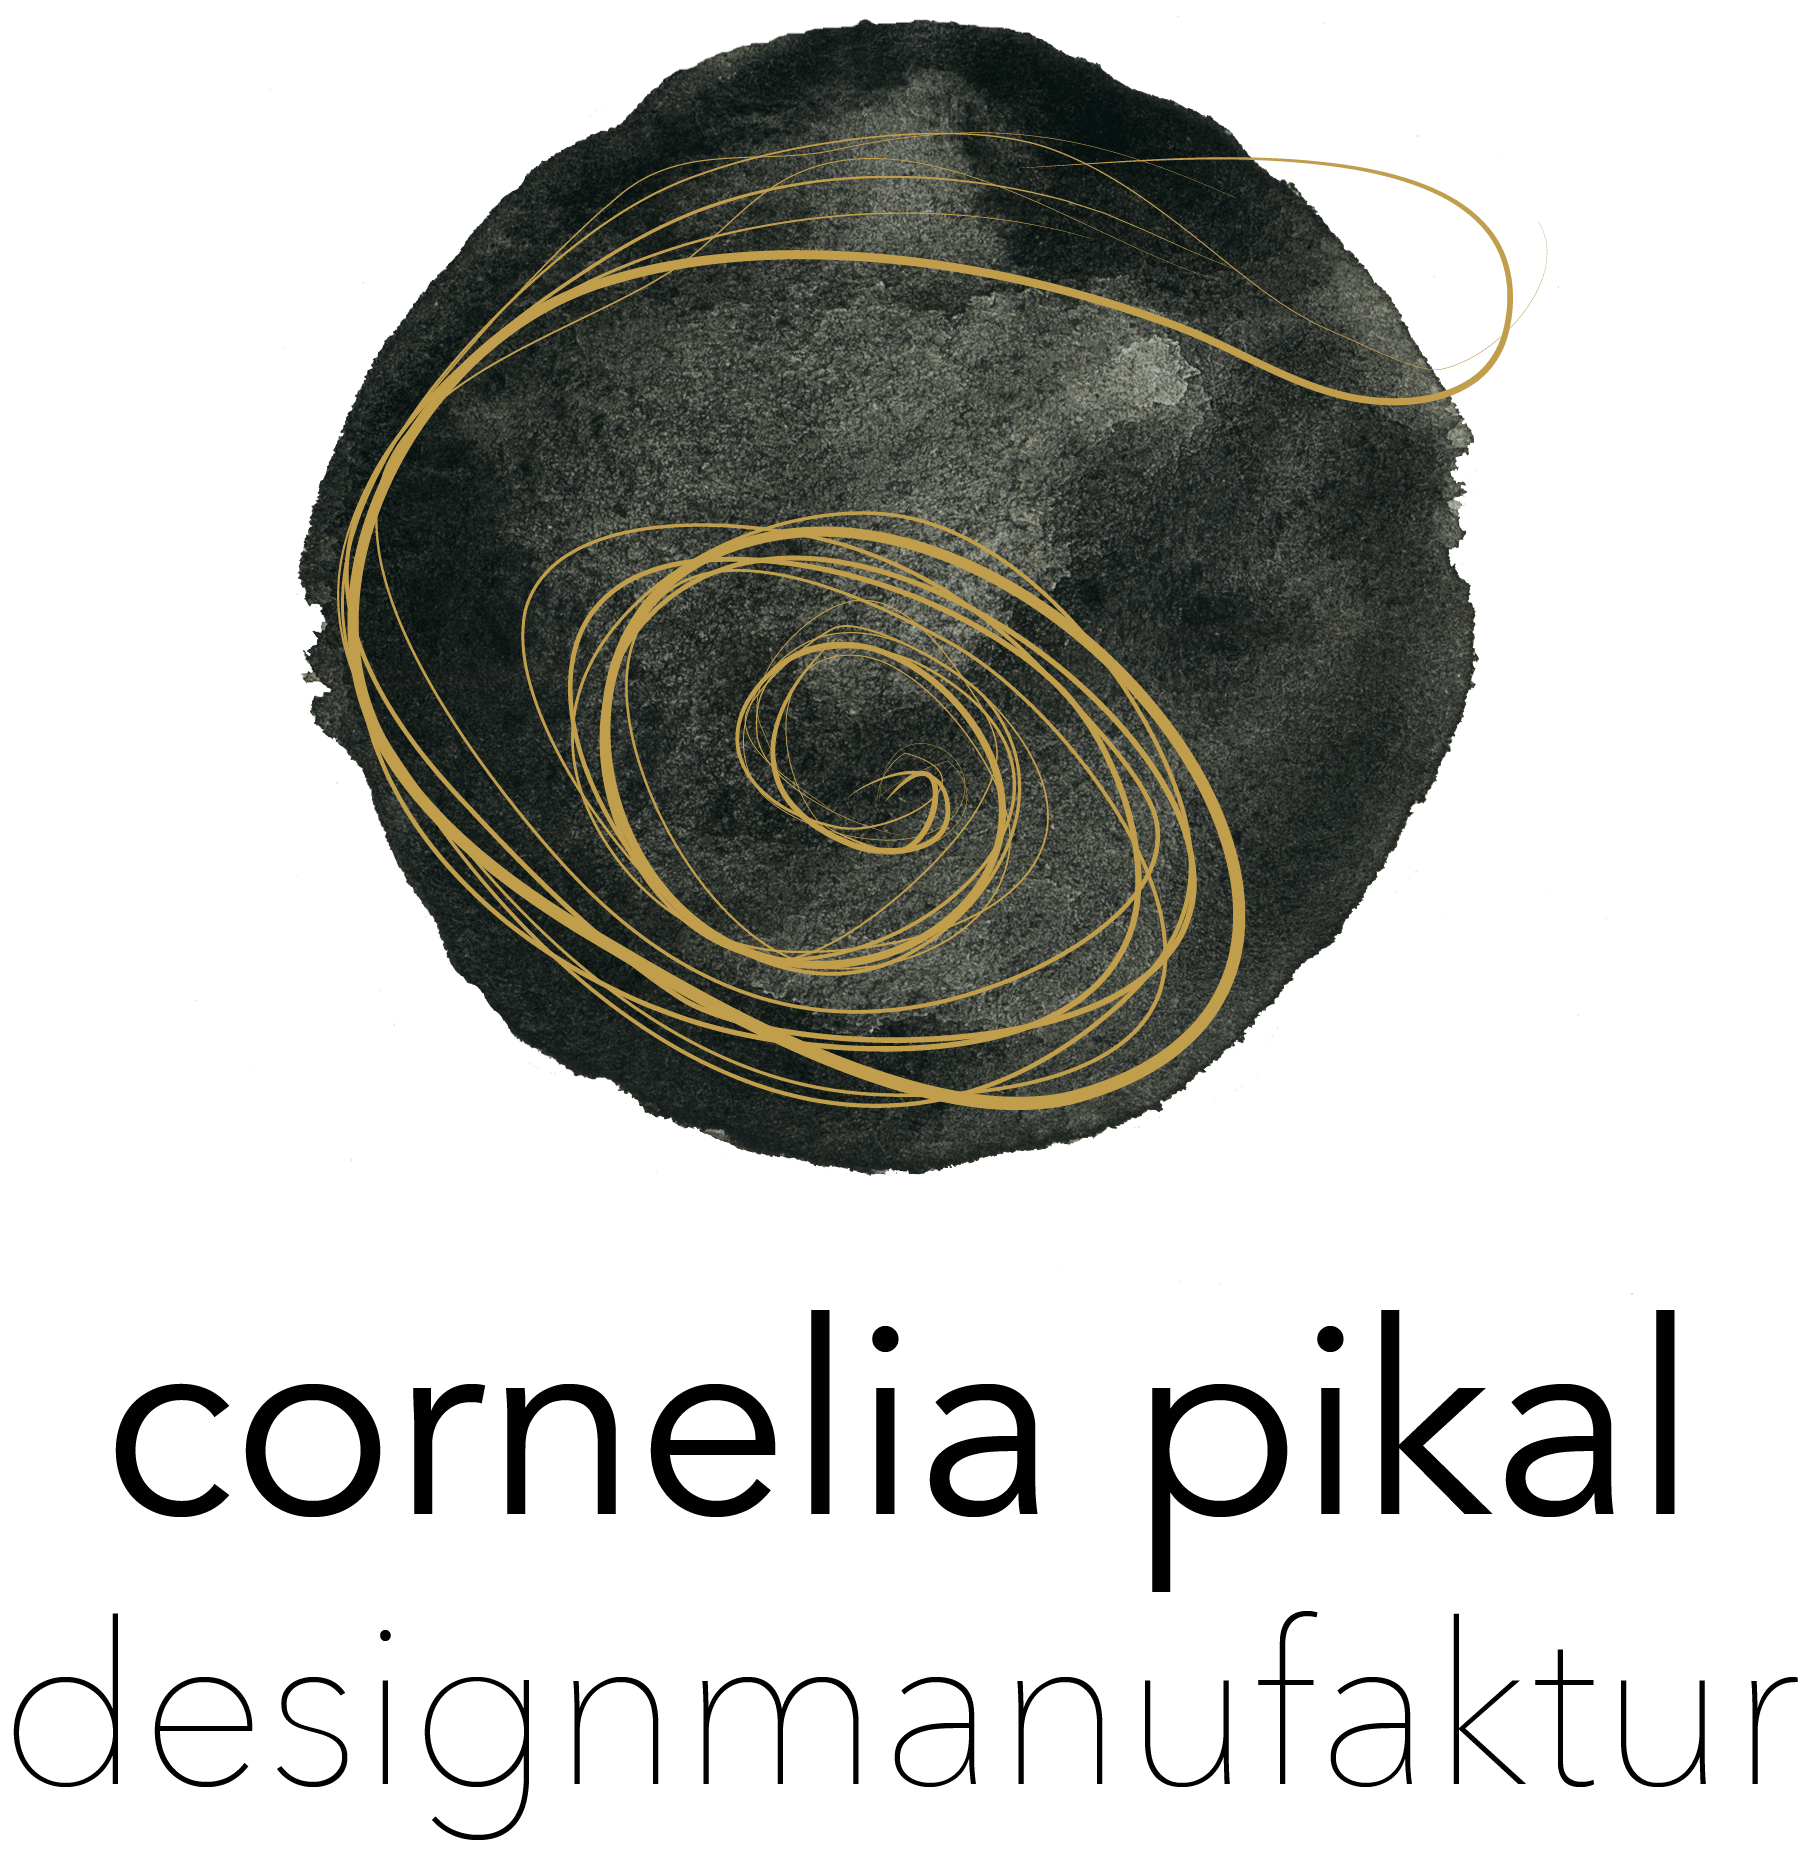 (c) Cornelia-pikal.de